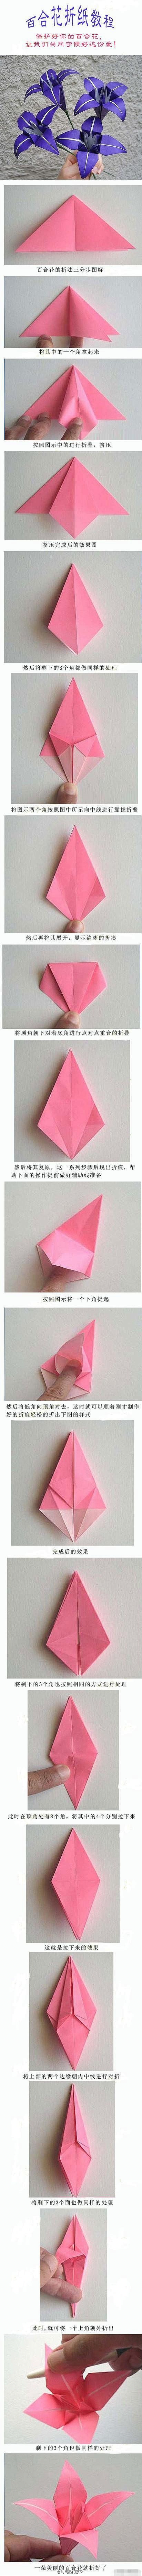 百合花折纸教程…_来自路过网吧的图片分享...